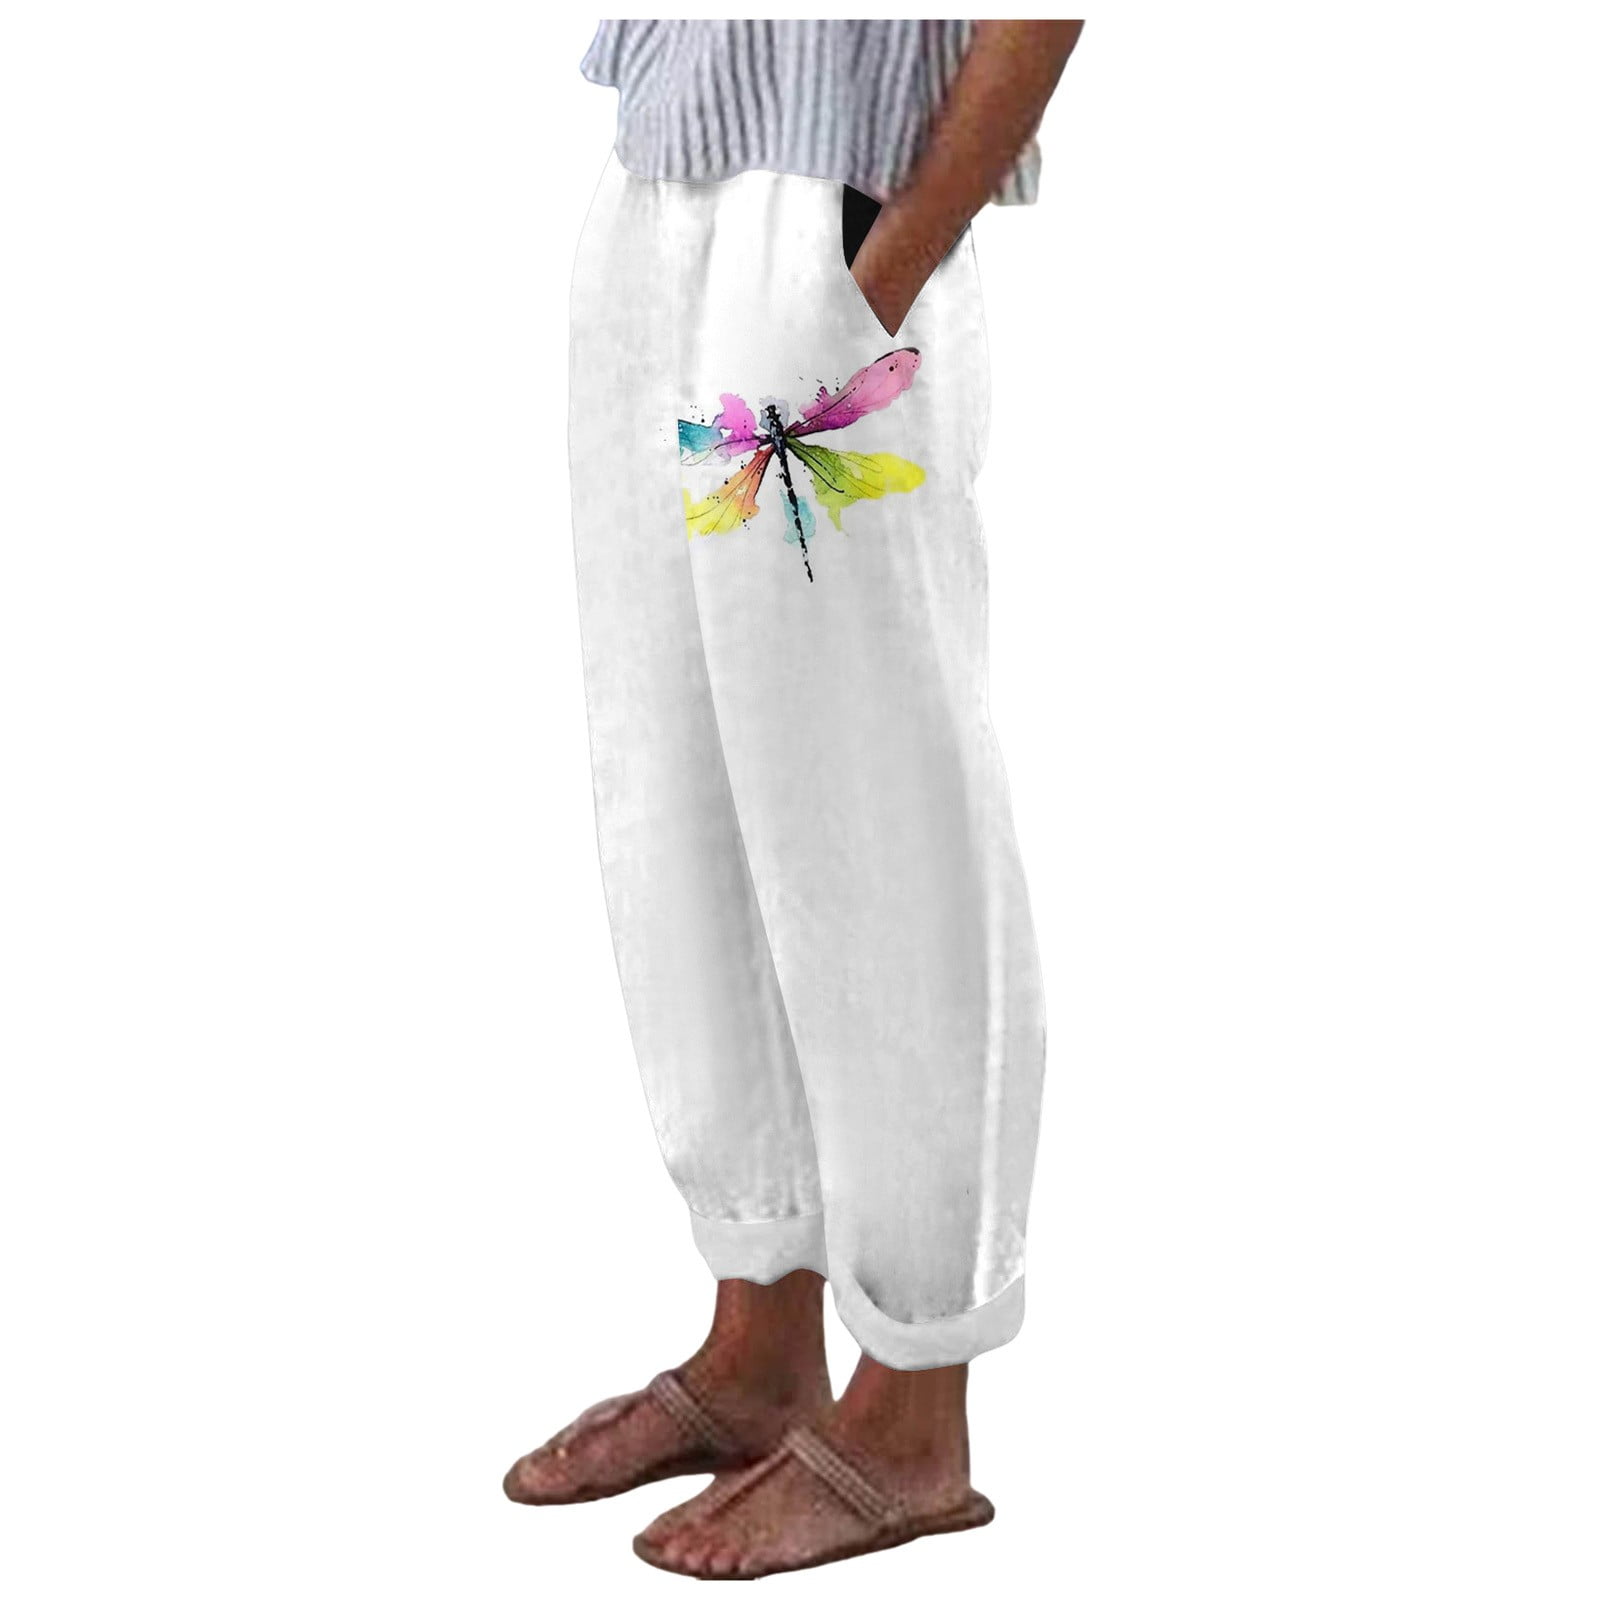 aDJFDGT Women Elastic Waist Pants for Women Short Women Spring and ...